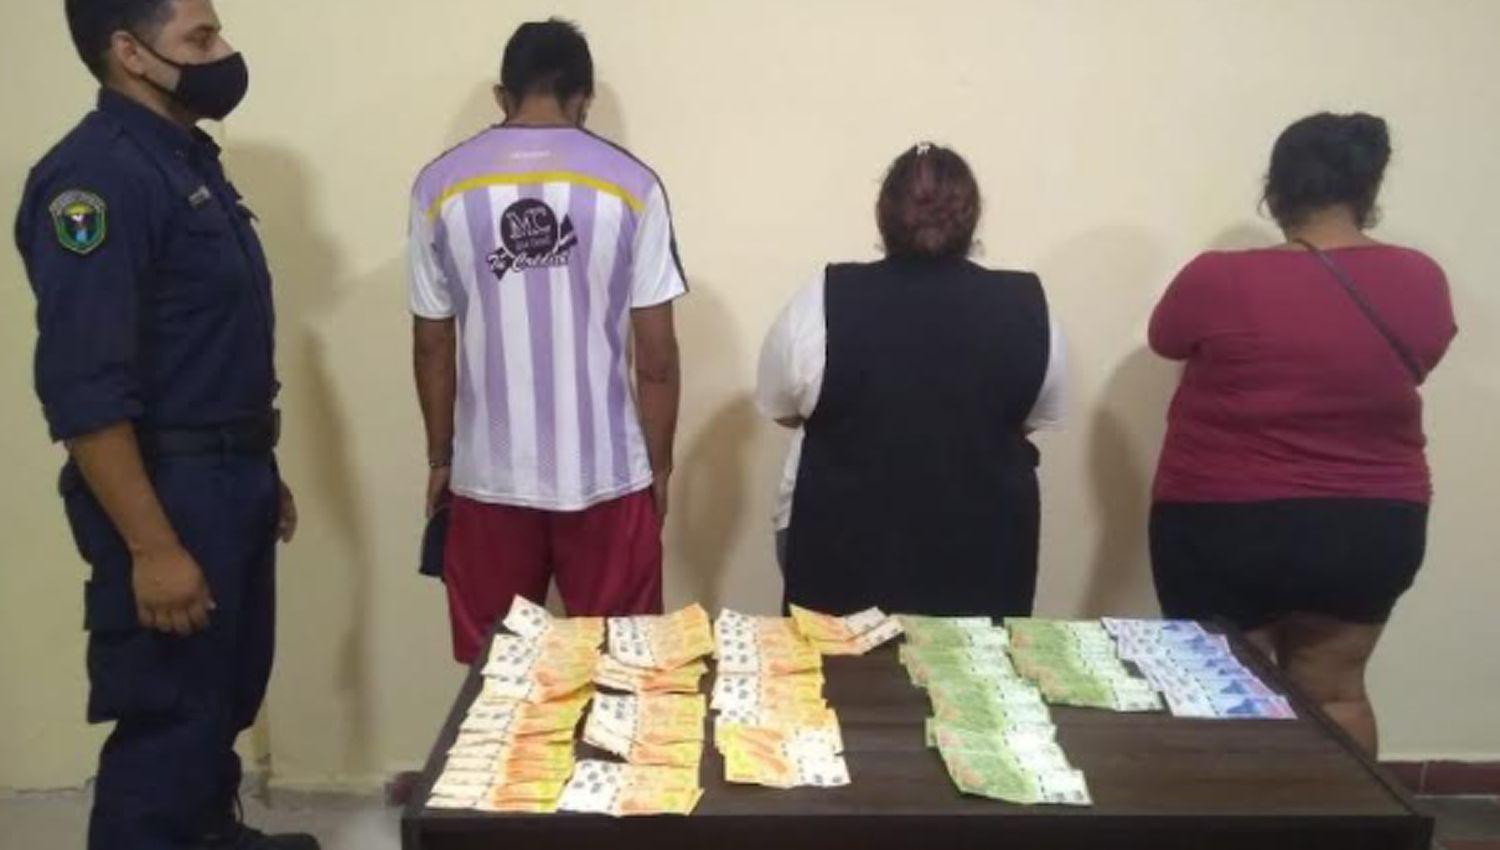 Empleados infieles habriacutean hurtado 75 mil pesos a la duentildea de una rotiseriacutea